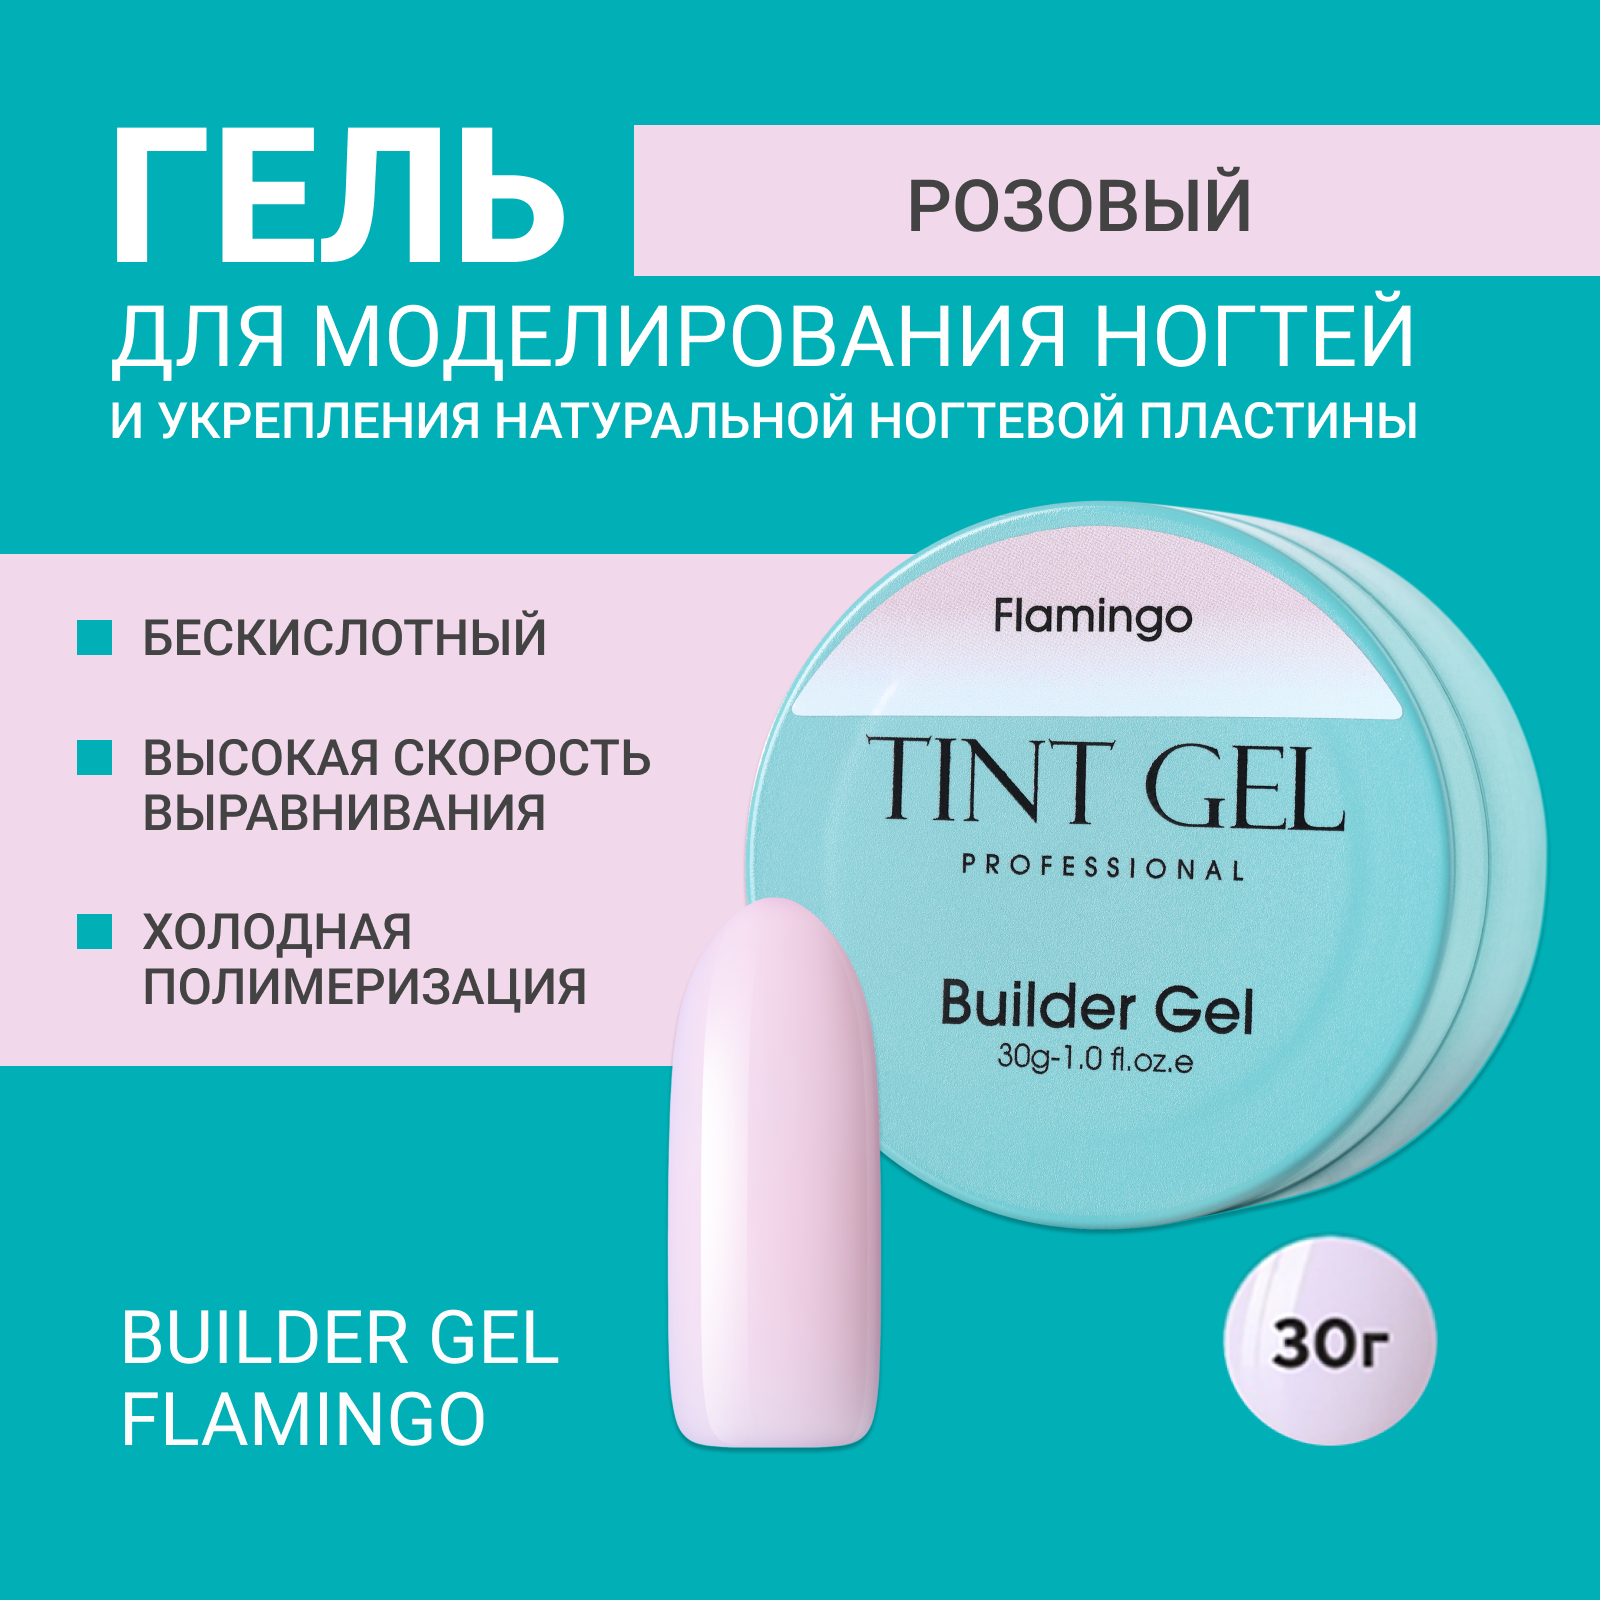 Гель Tint Gel Professional Builder gel Flamingo 30 г дутики flamingo